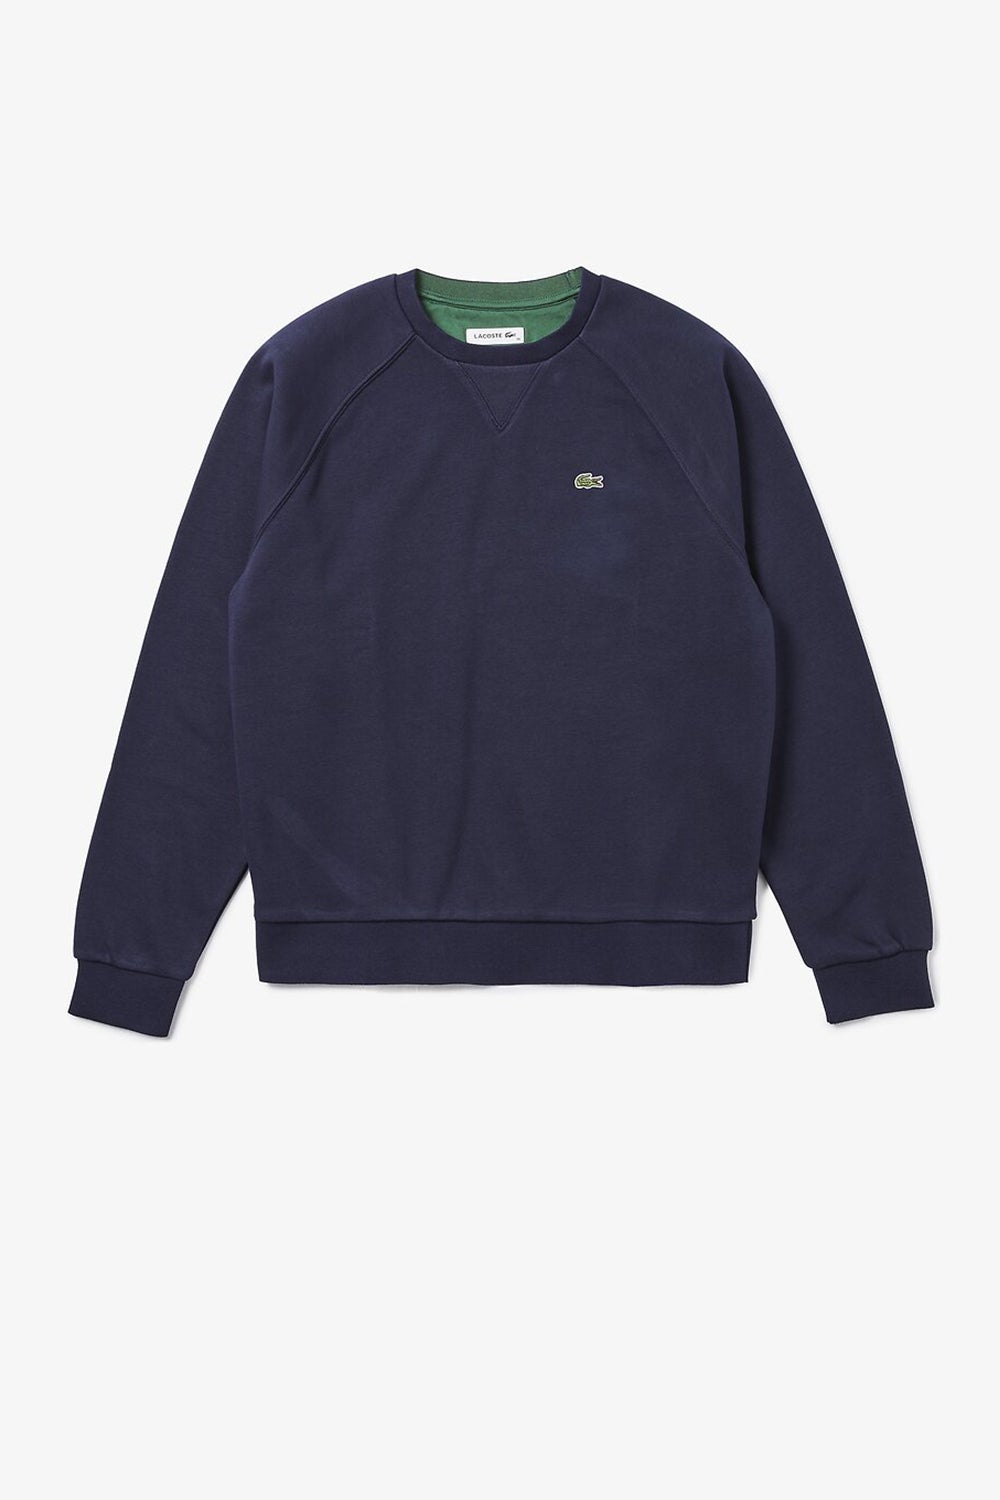 Lacoste Classic Sweatshirt